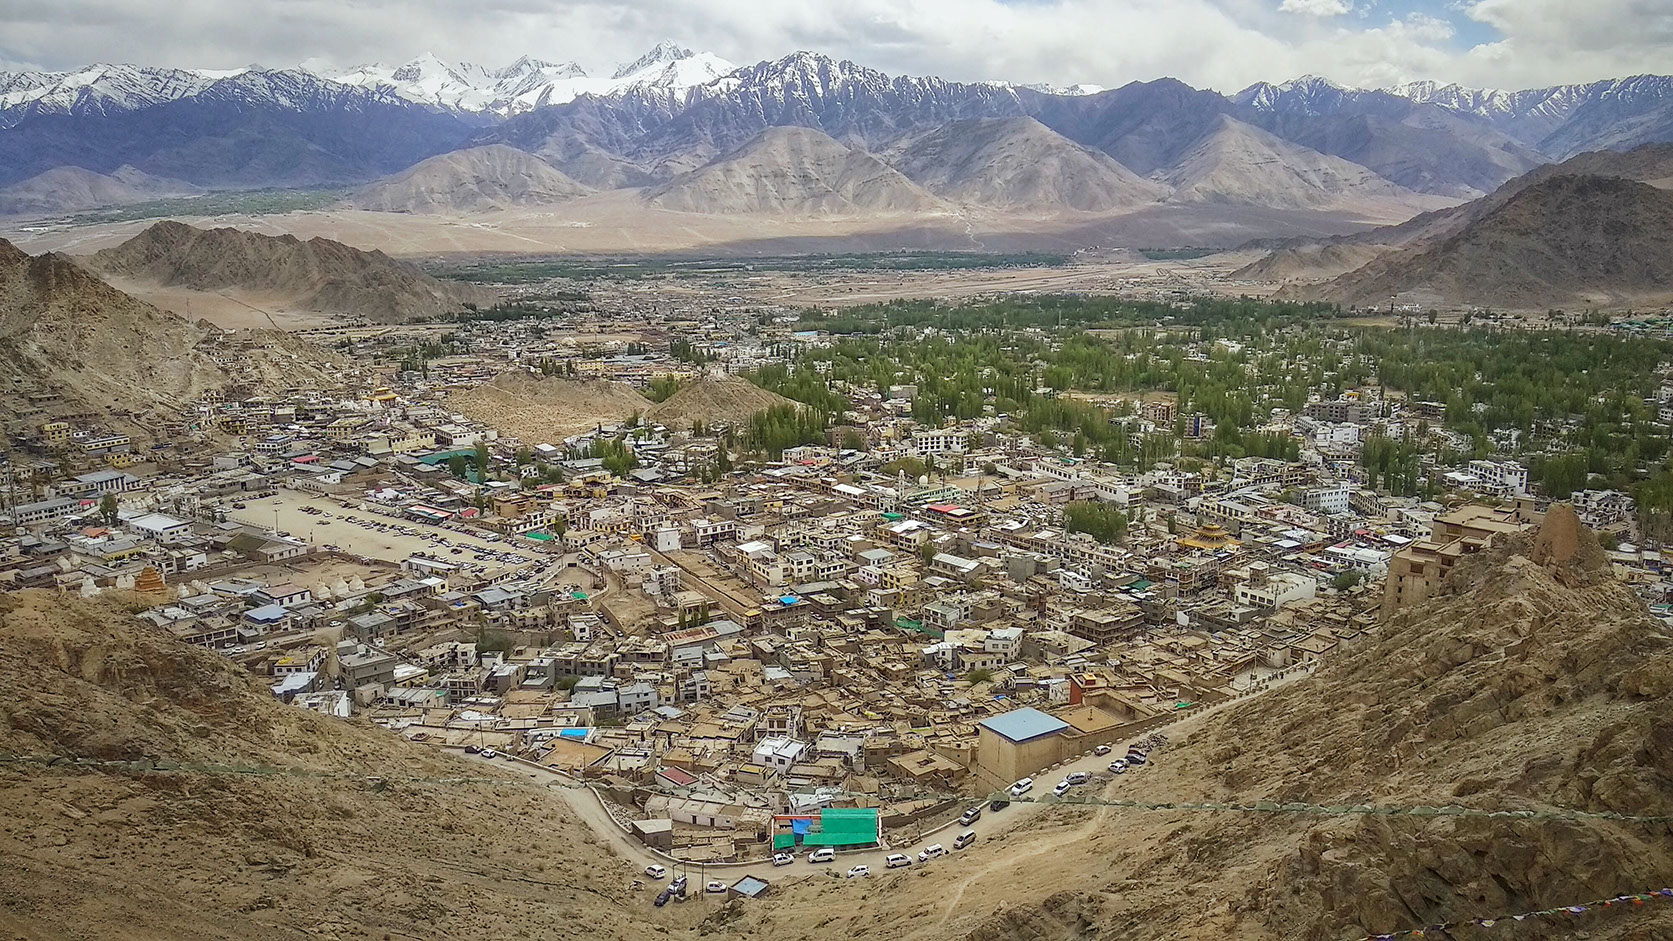 ladakh trip story